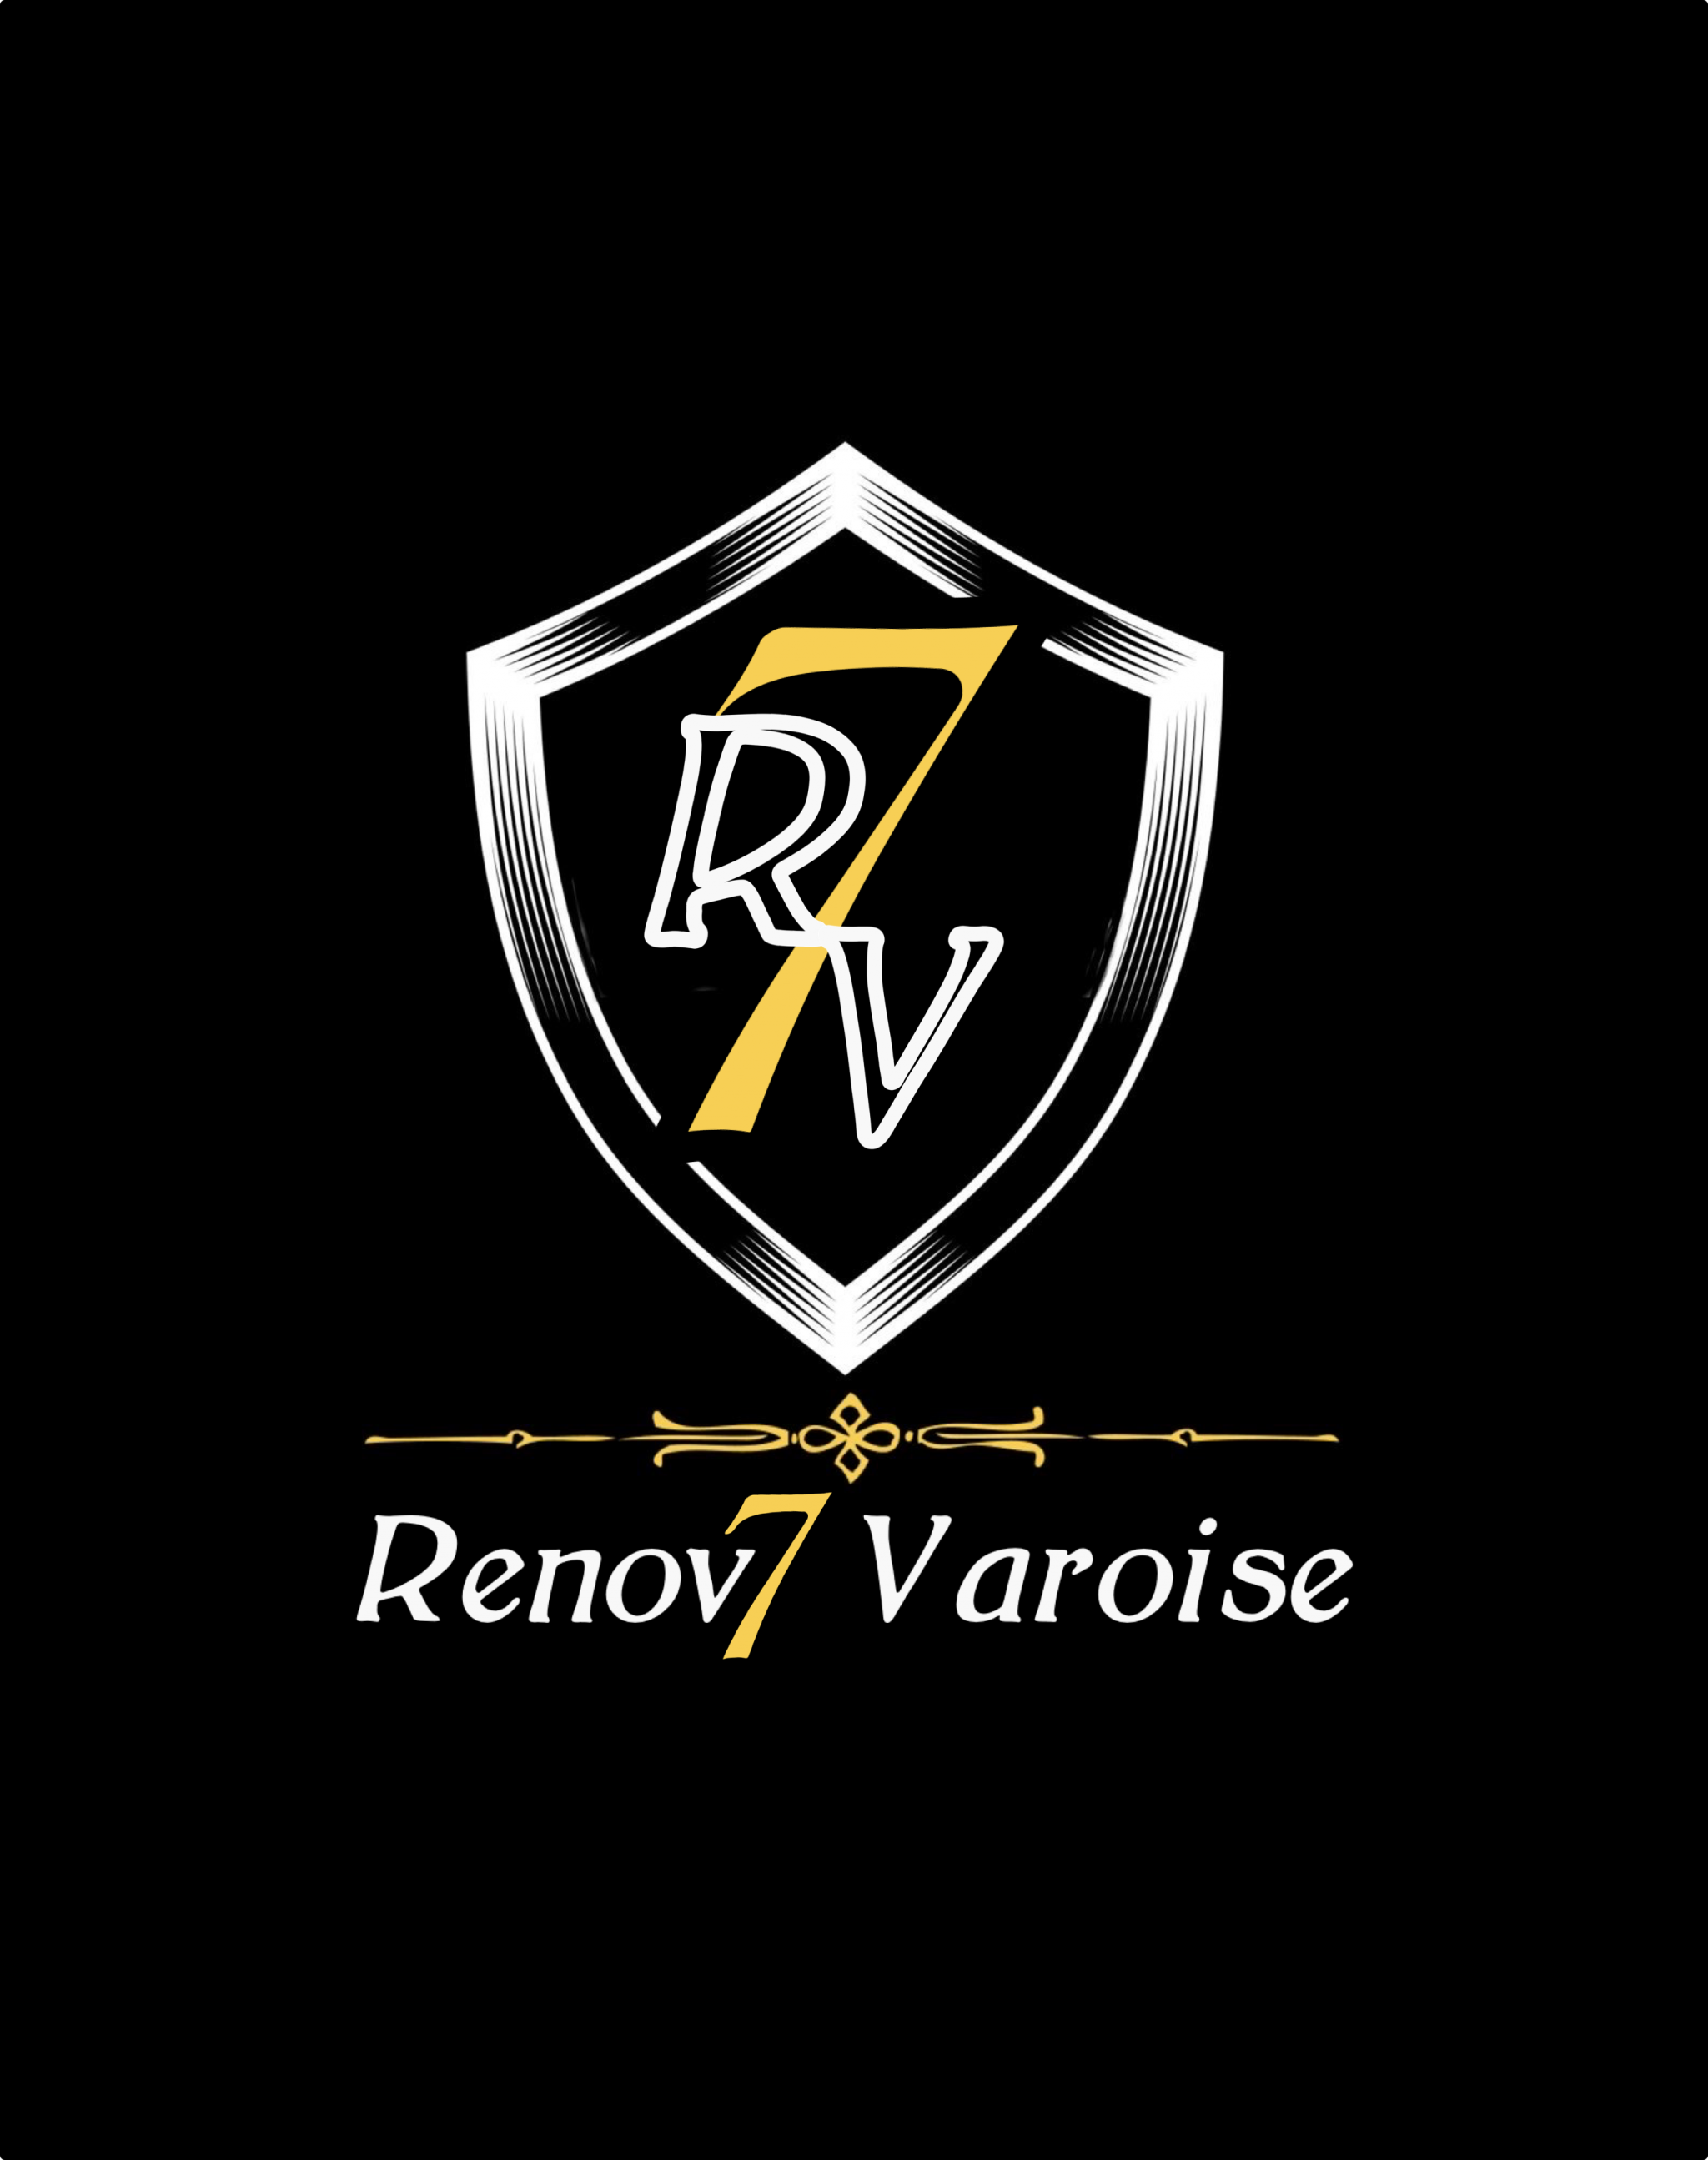 Logo de Renov7 varoise, société de travaux en Construction, murs, cloisons, plafonds en plaques de plâtre